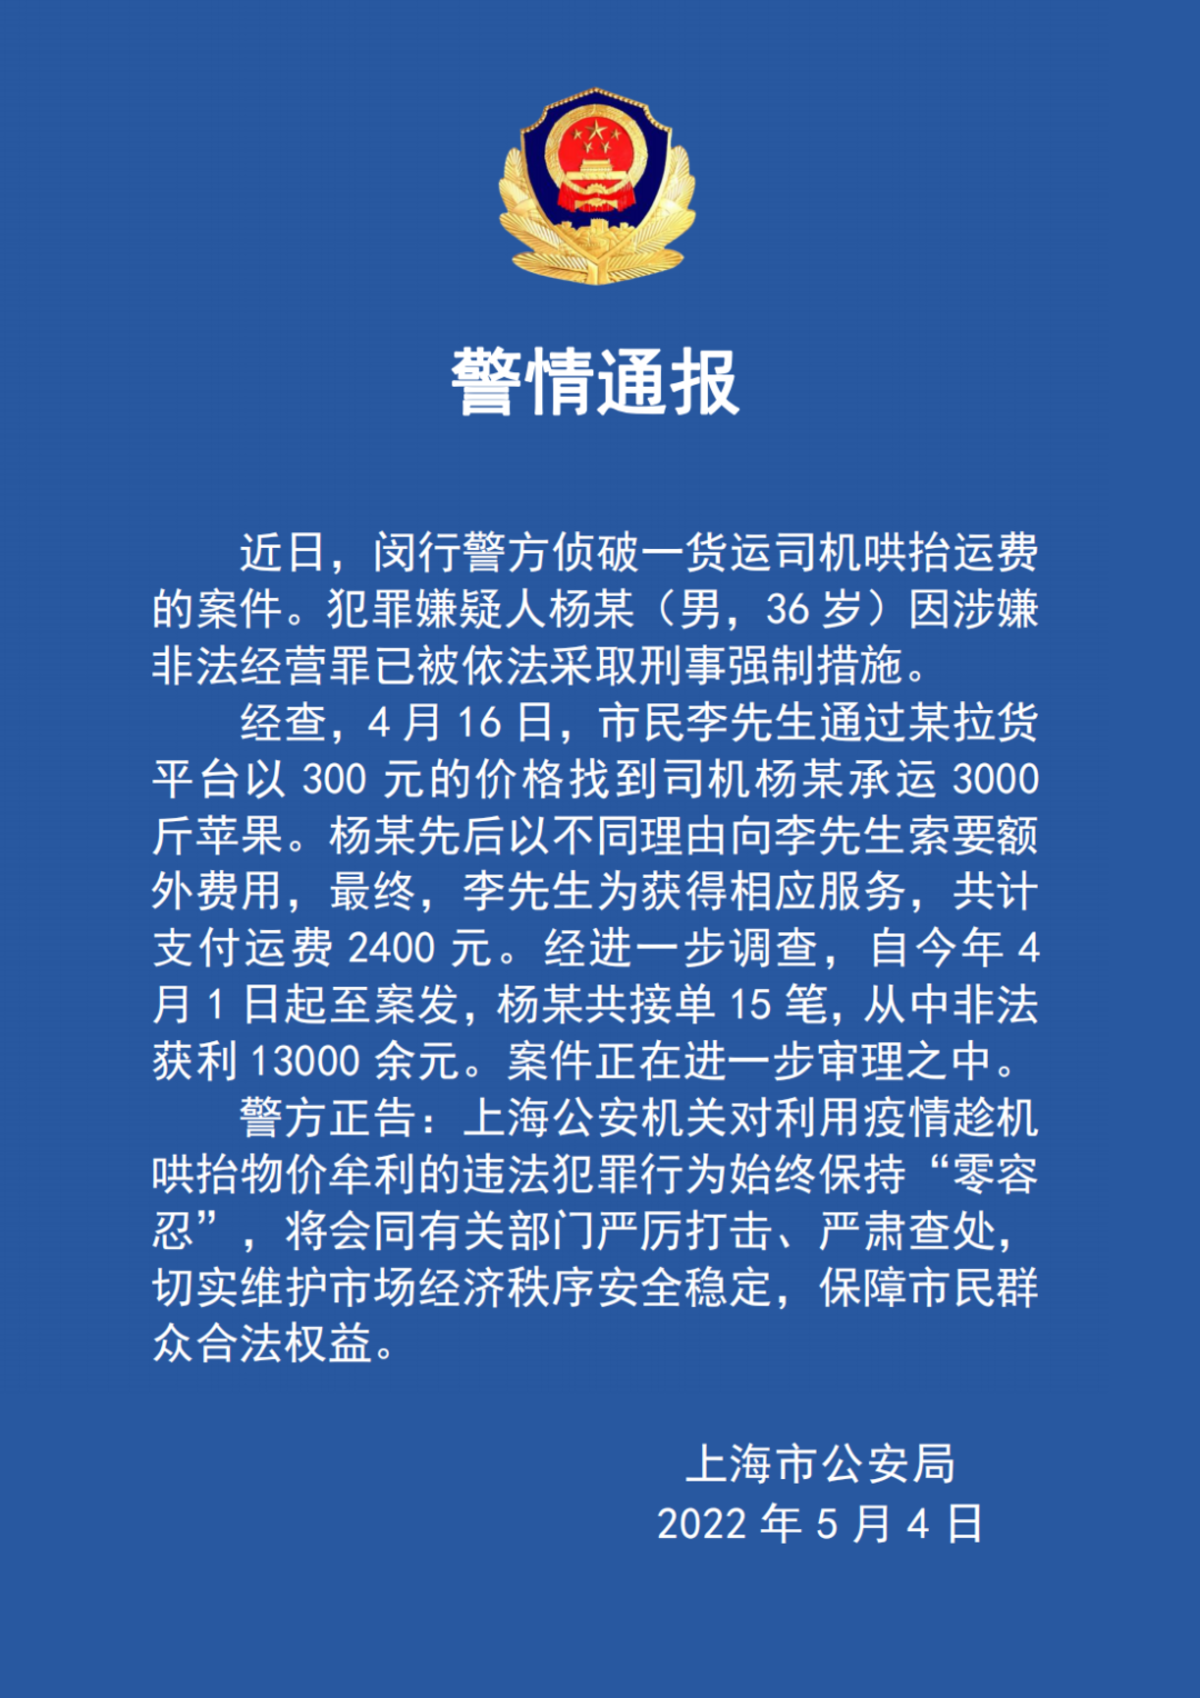 300元运费变2400 上海闵行一货运司机因哄抬运费被采取刑事强制措施